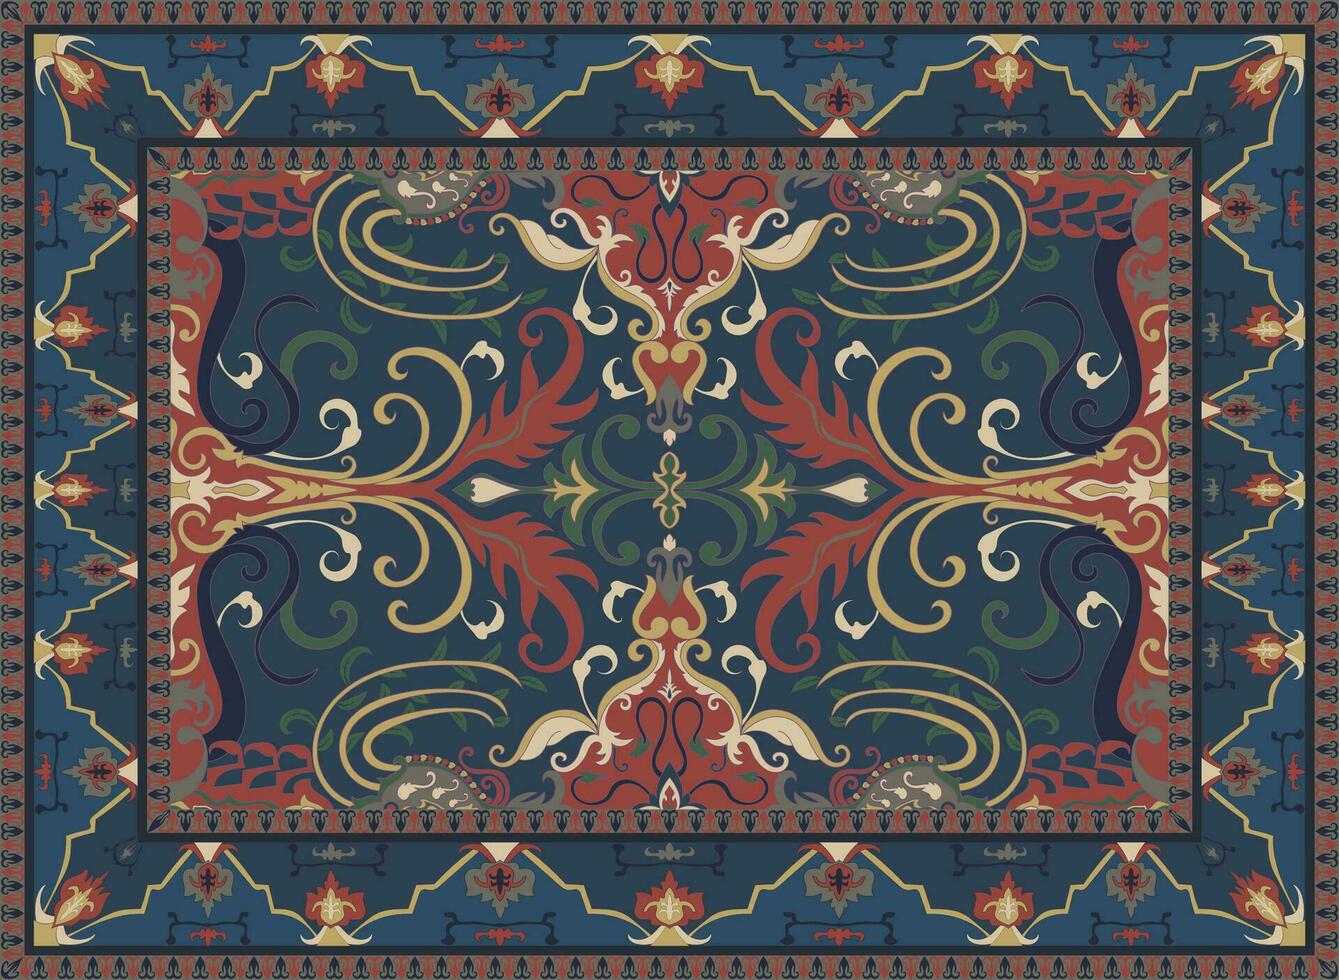 antiguo real alfombra diseño persa alfombra el historia de antiguo flor luces decorando el gente sencillo color edición vector ilustración